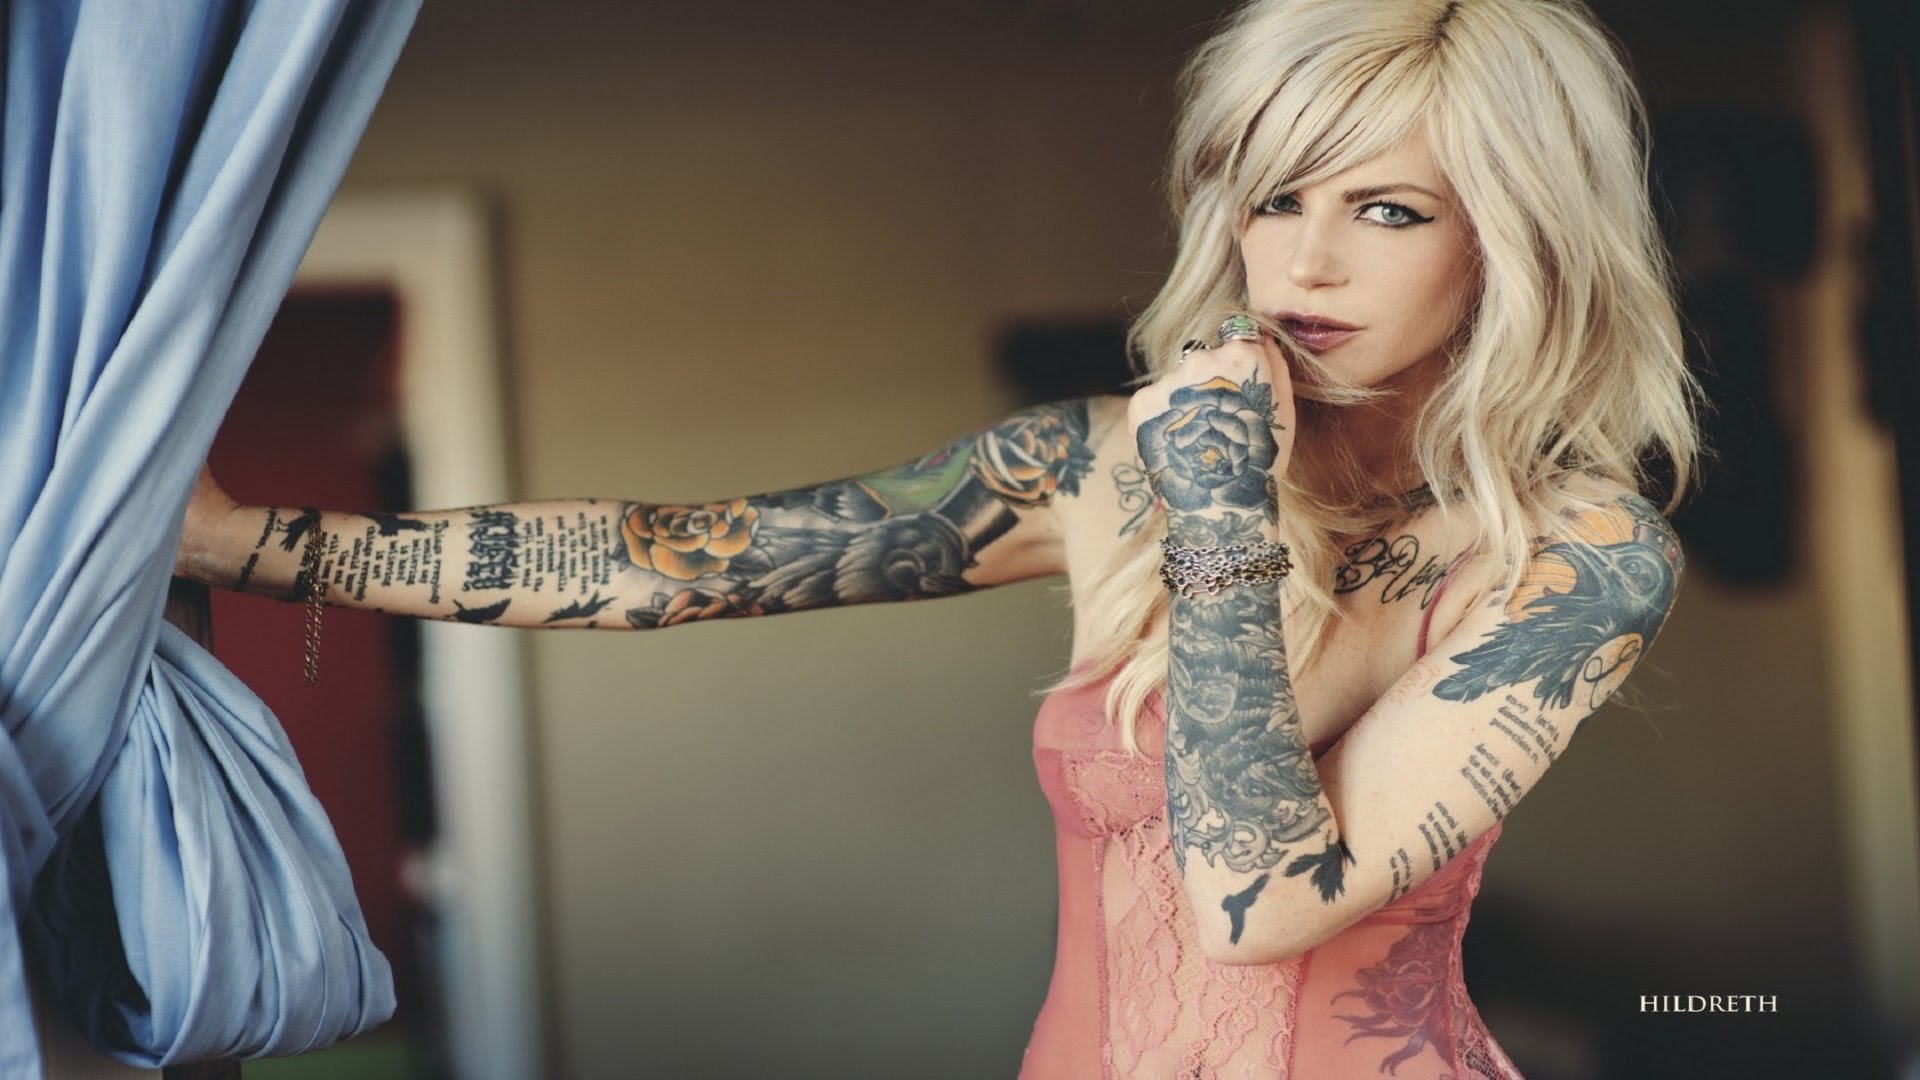 Pics girl hot tattooed 100 Sexiest